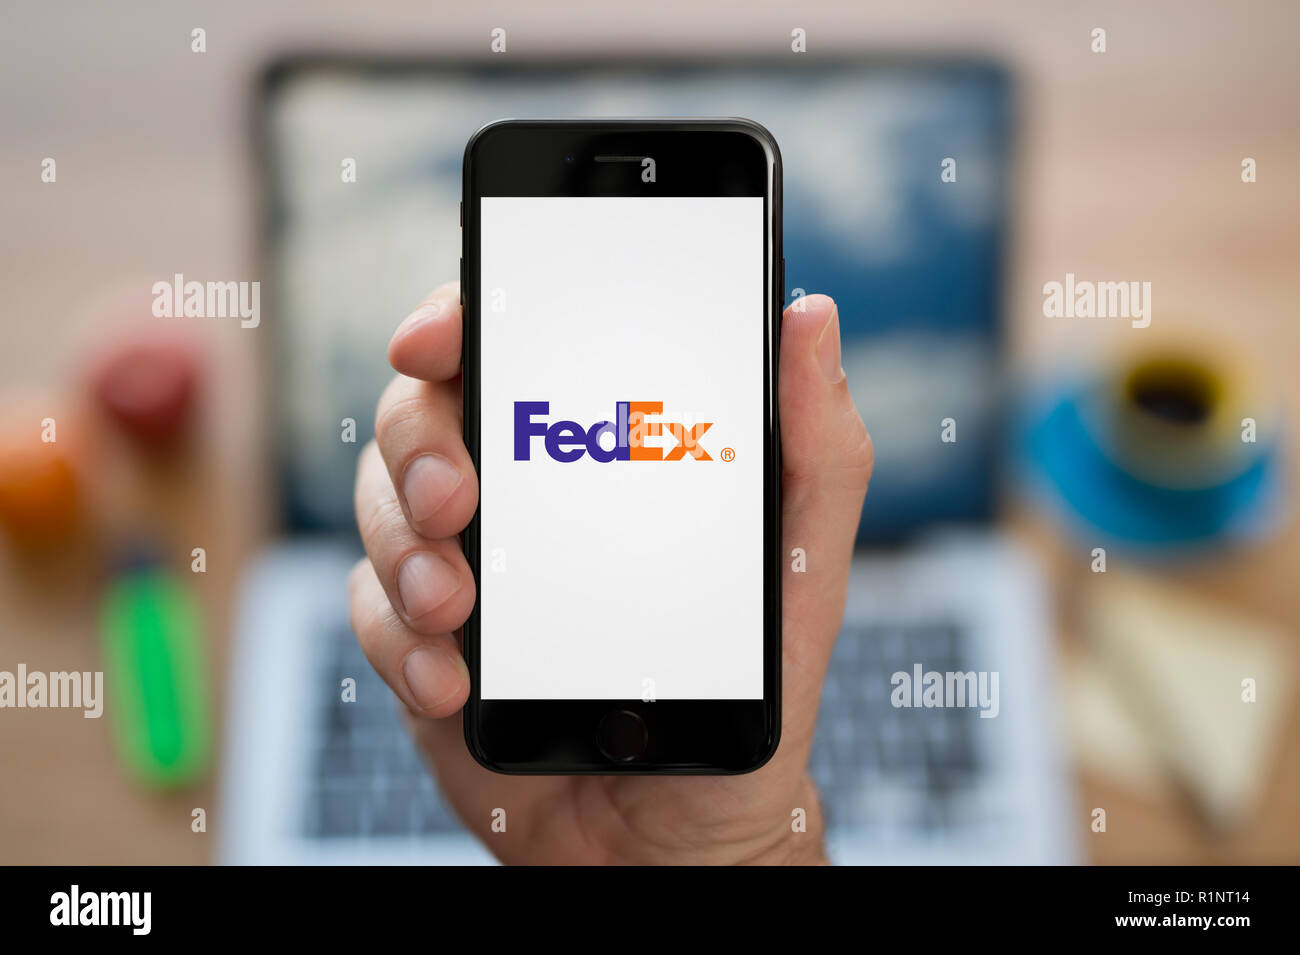 Un uomo guarda al suo iPhone che visualizza la Fed Ex logo, mentre se ne sta seduto alla sua scrivania per computer (solo uso editoriale). Foto Stock